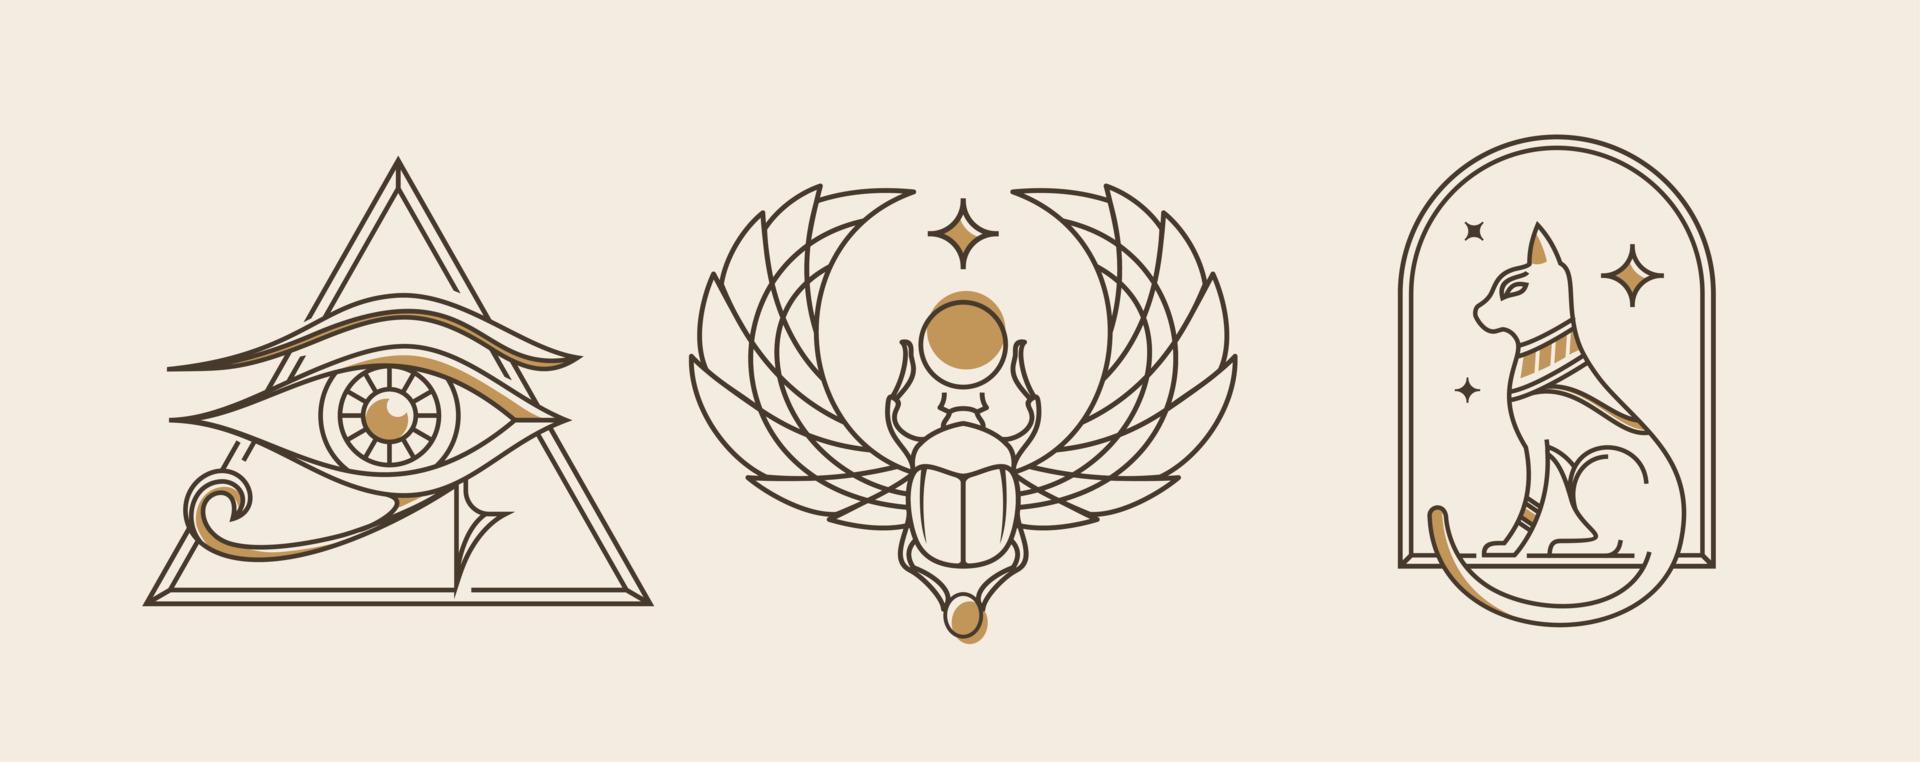 oude Egypte wijnoogst kunst hipster lijn kunst illustratie vector met oog van hoera, heilig scarabee en kat, oud school- tatoeëren stijl artwork verzameling set.